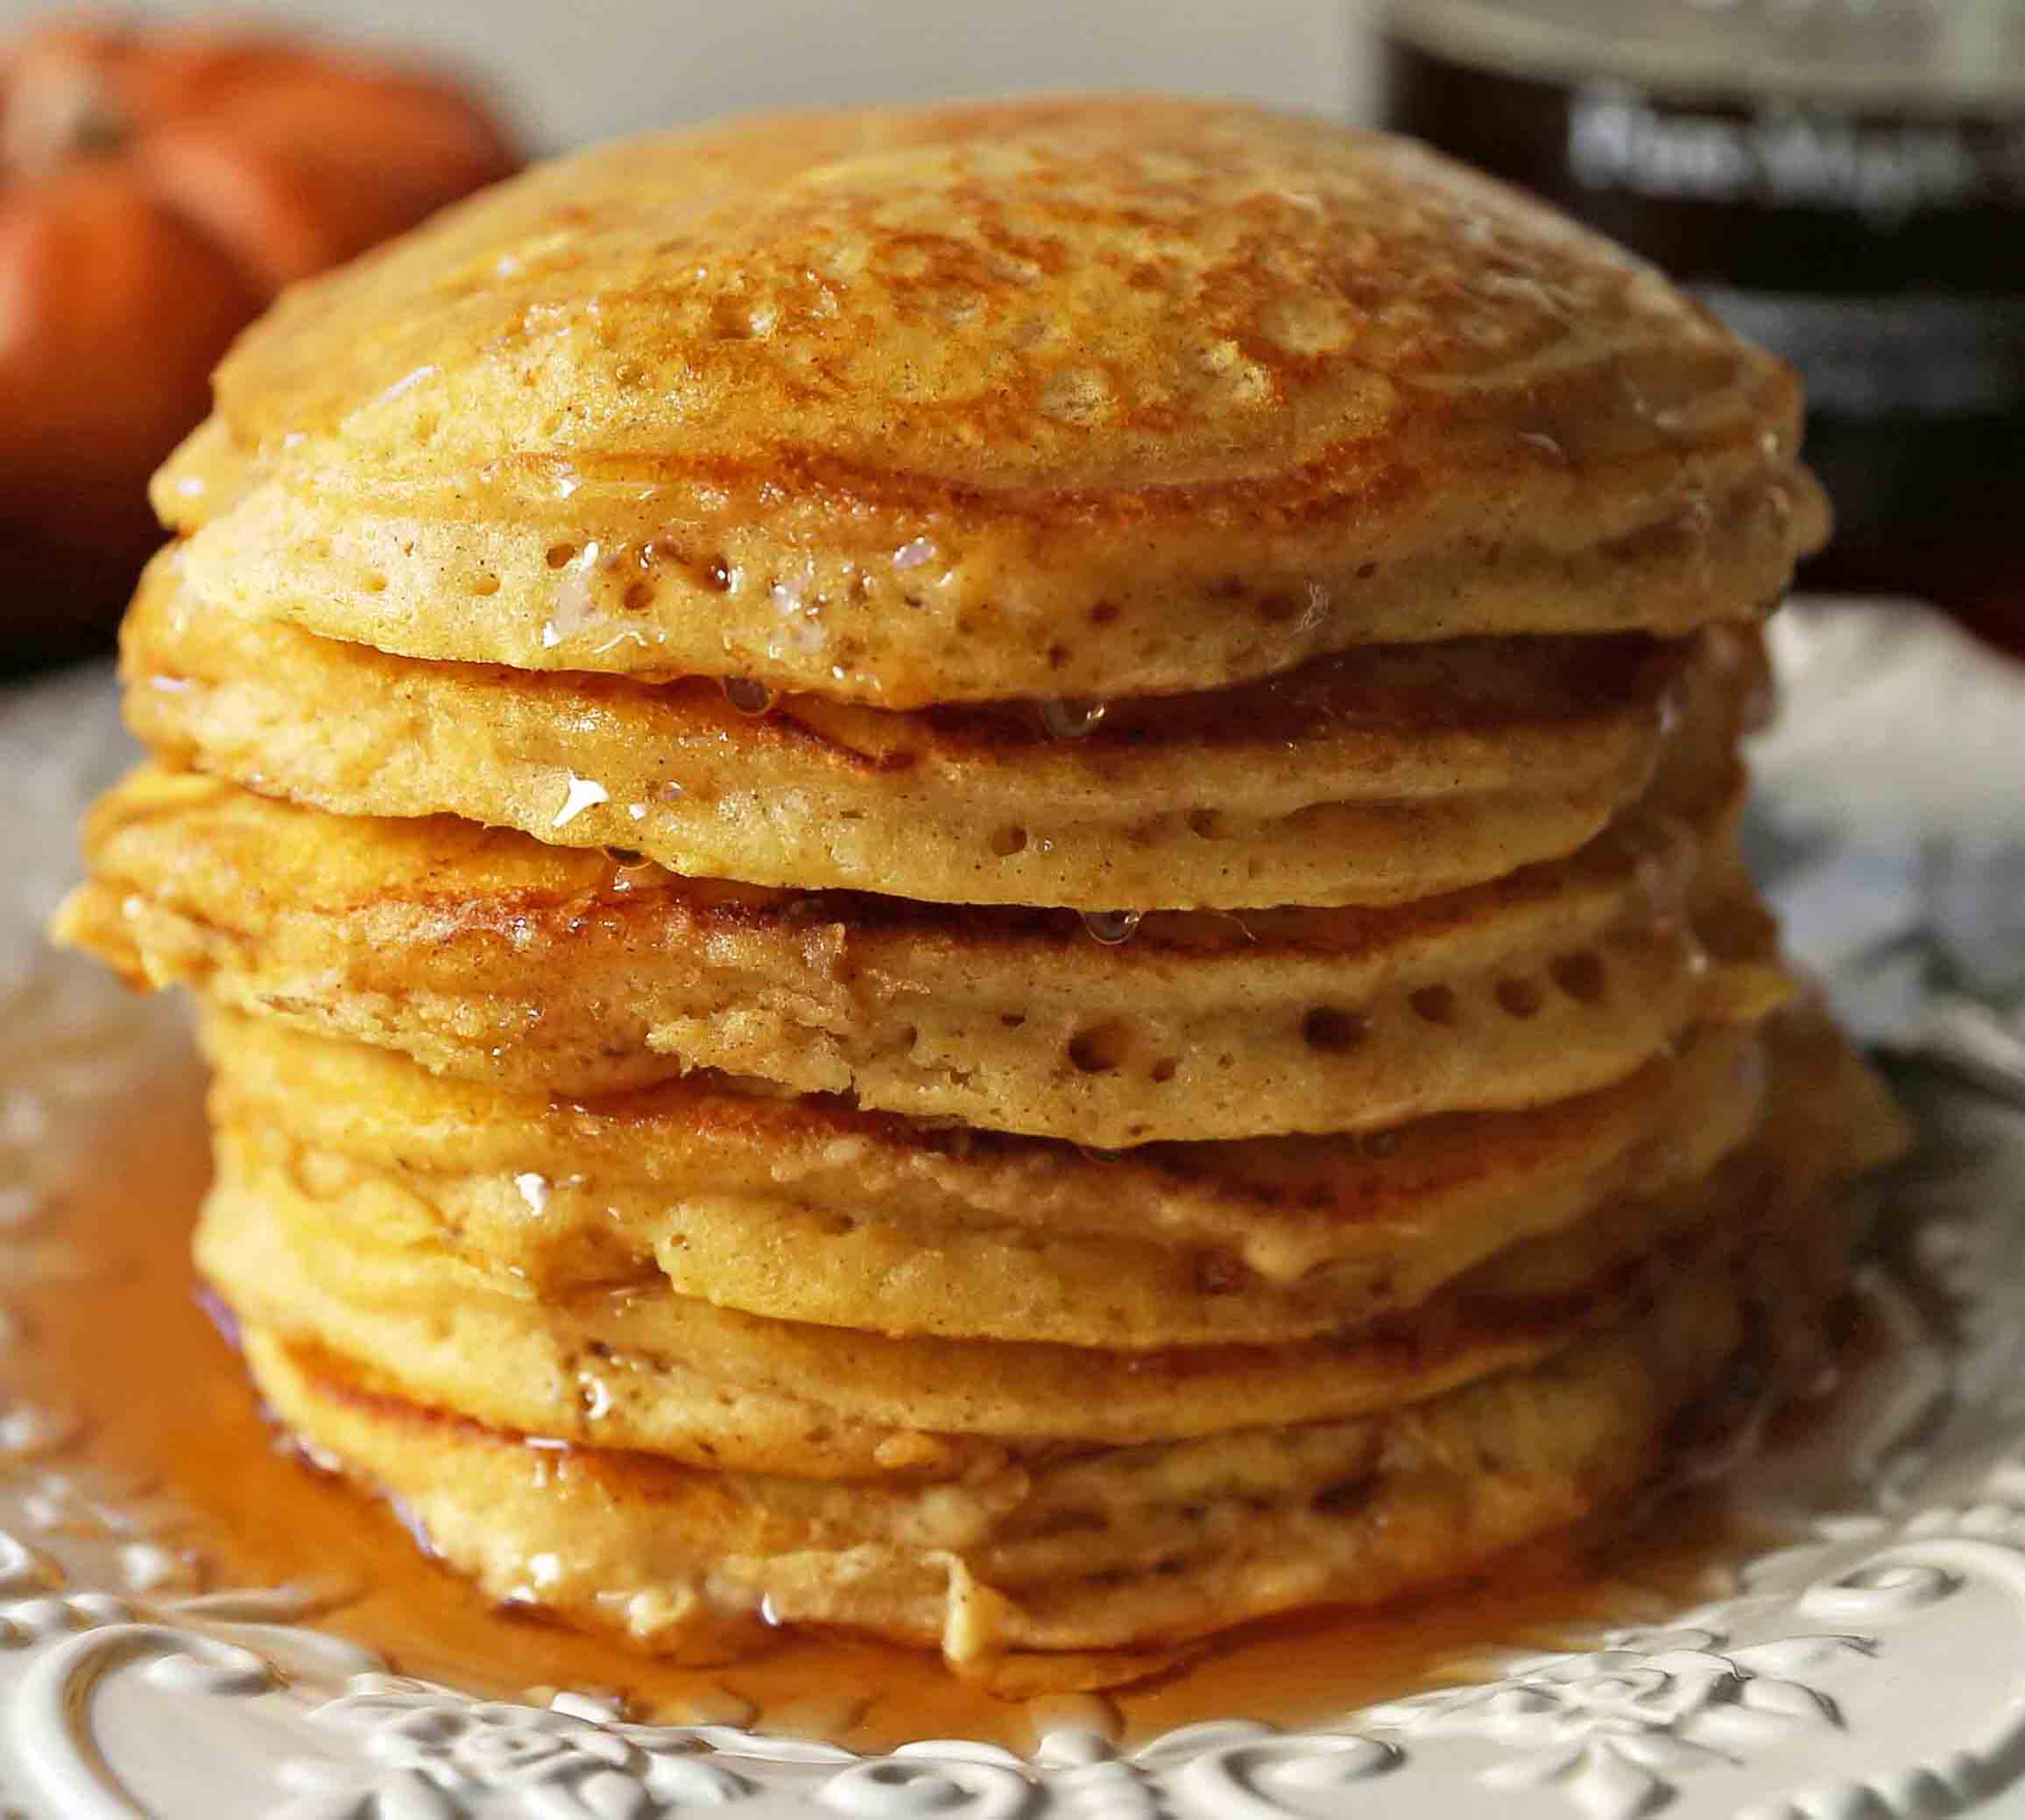 The BEST Pumpkin Pancakes. Light, fluffy, airy, and creamy pumpkin spiced pancakes. The perfect Fall breakfast. www.modernhoney.com #pumpkin #pumpkinpancakes #pumpkinrecipes #pumpkinbreakfast #fallbreakfast #pumpkinspice